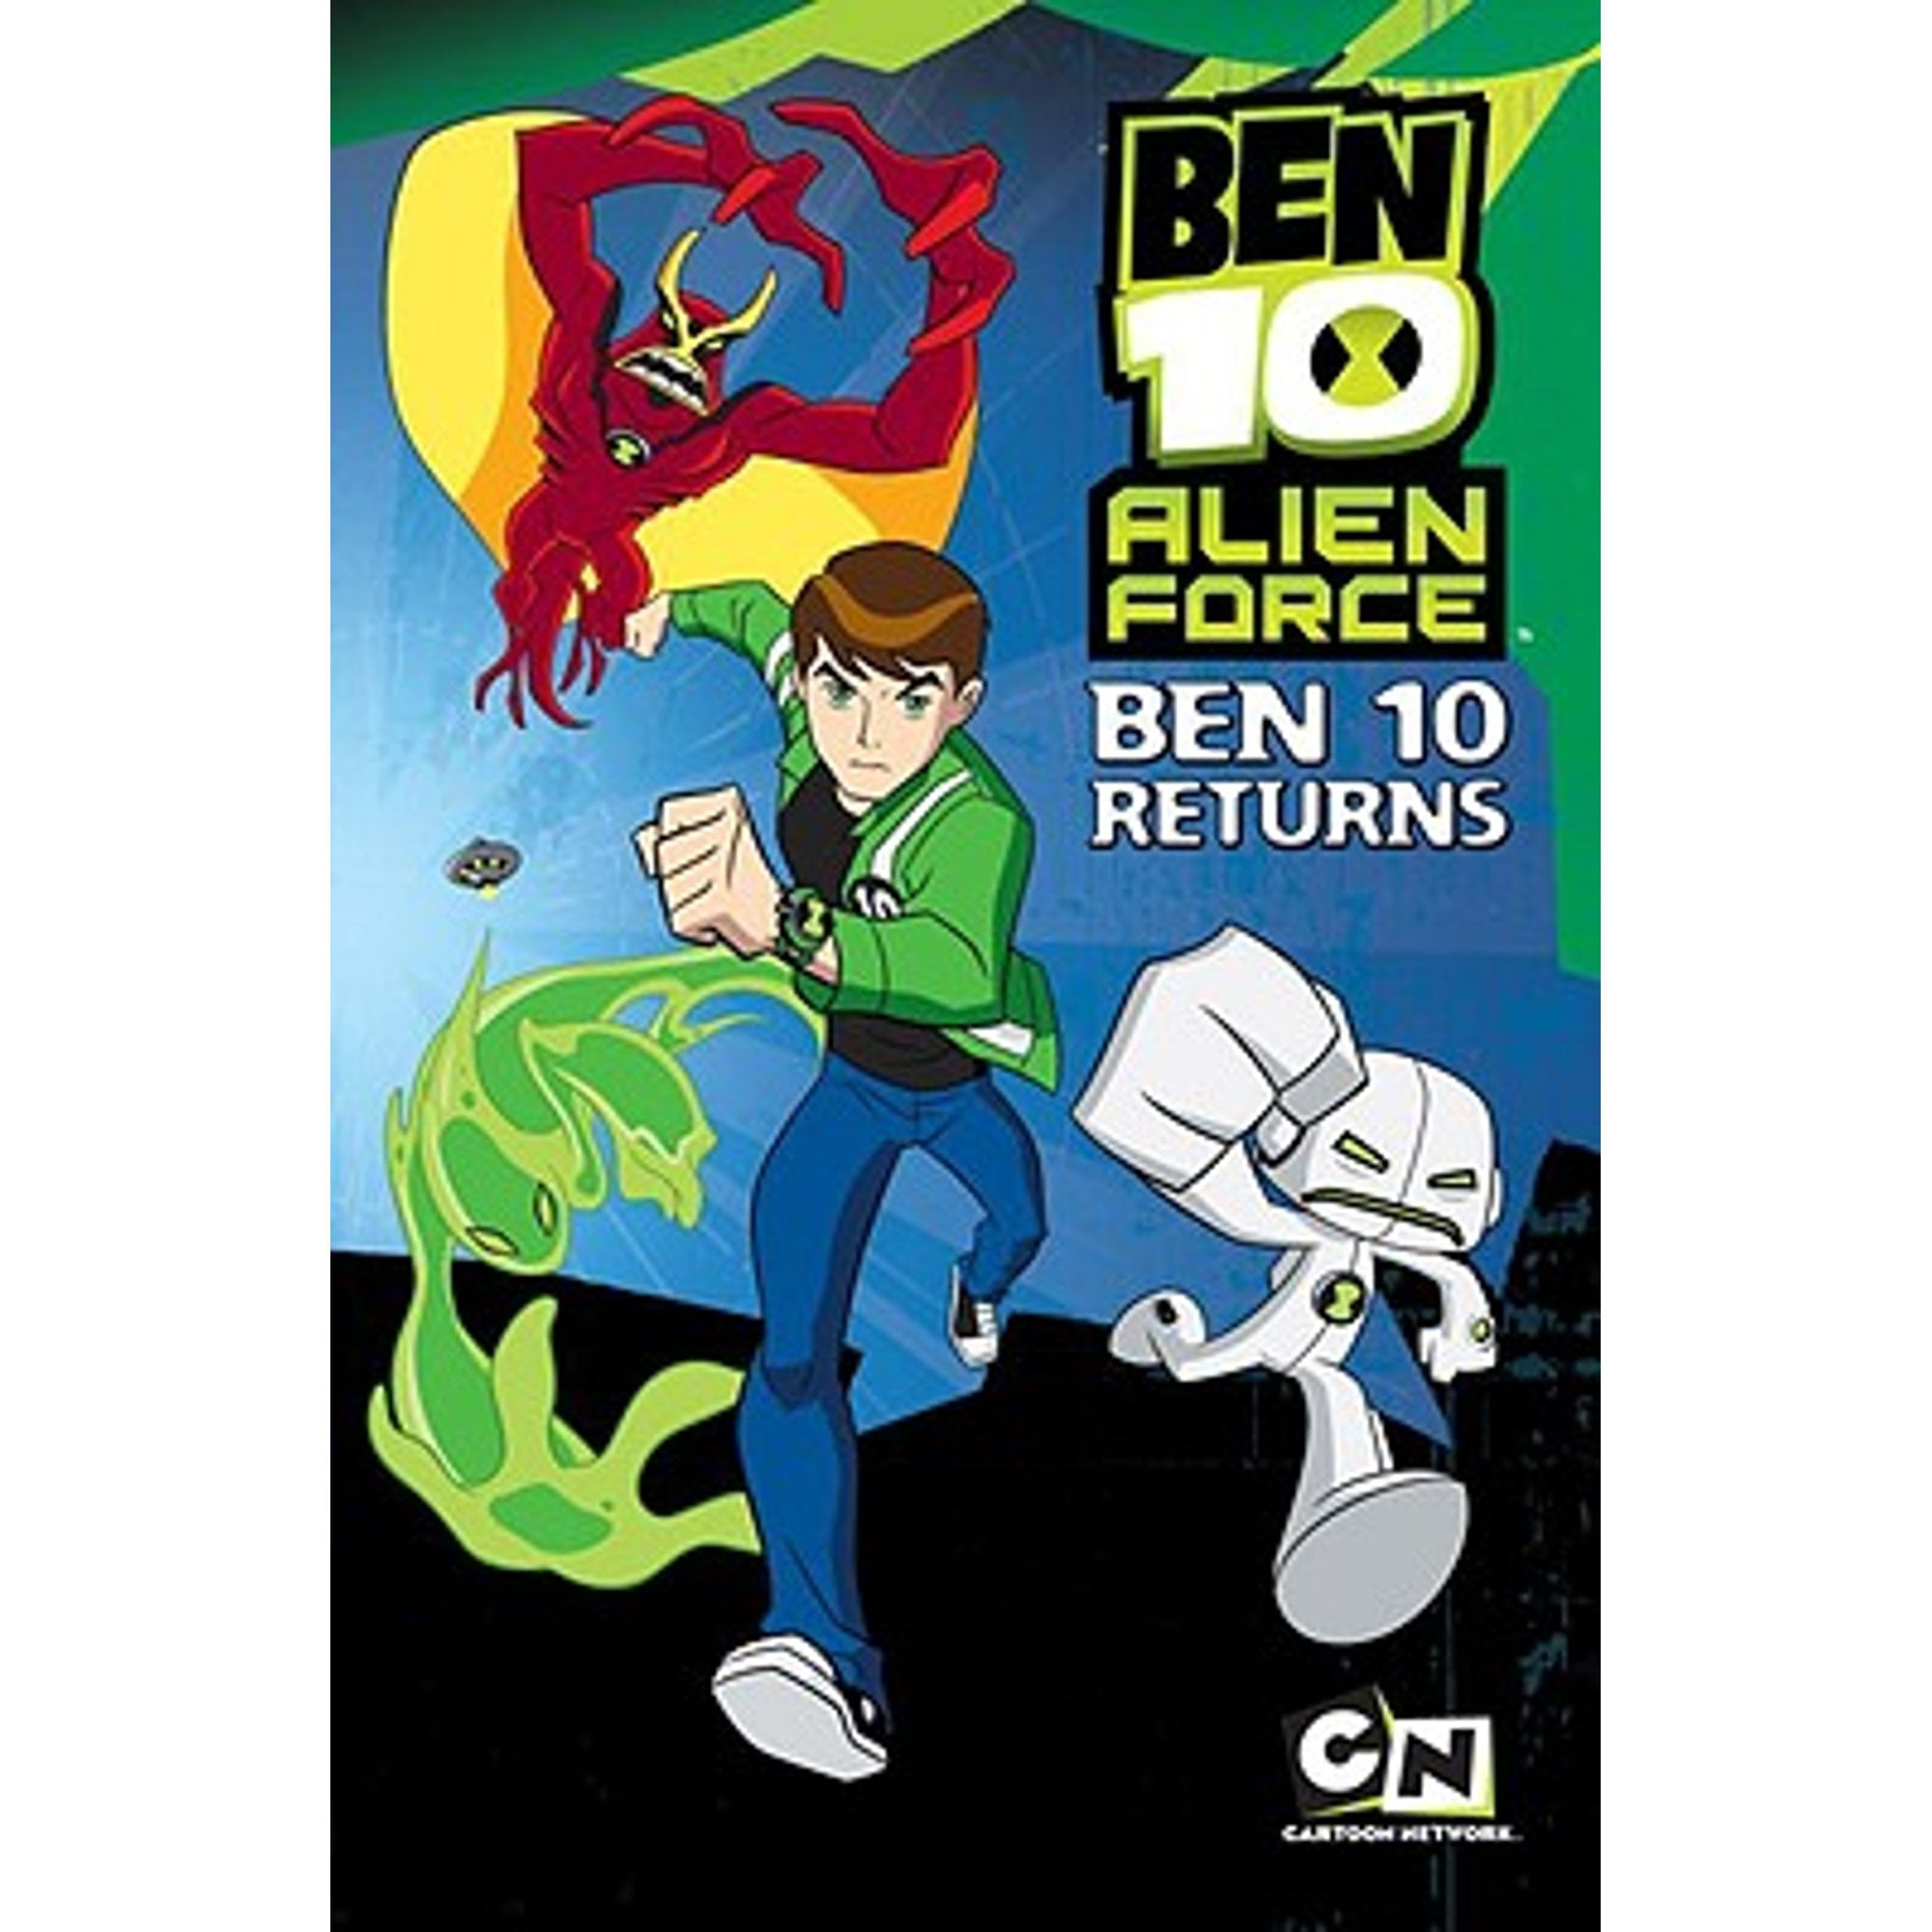 Ben 10 Alien Force: Ben 10 Returns by Elizabeth Hurchalla